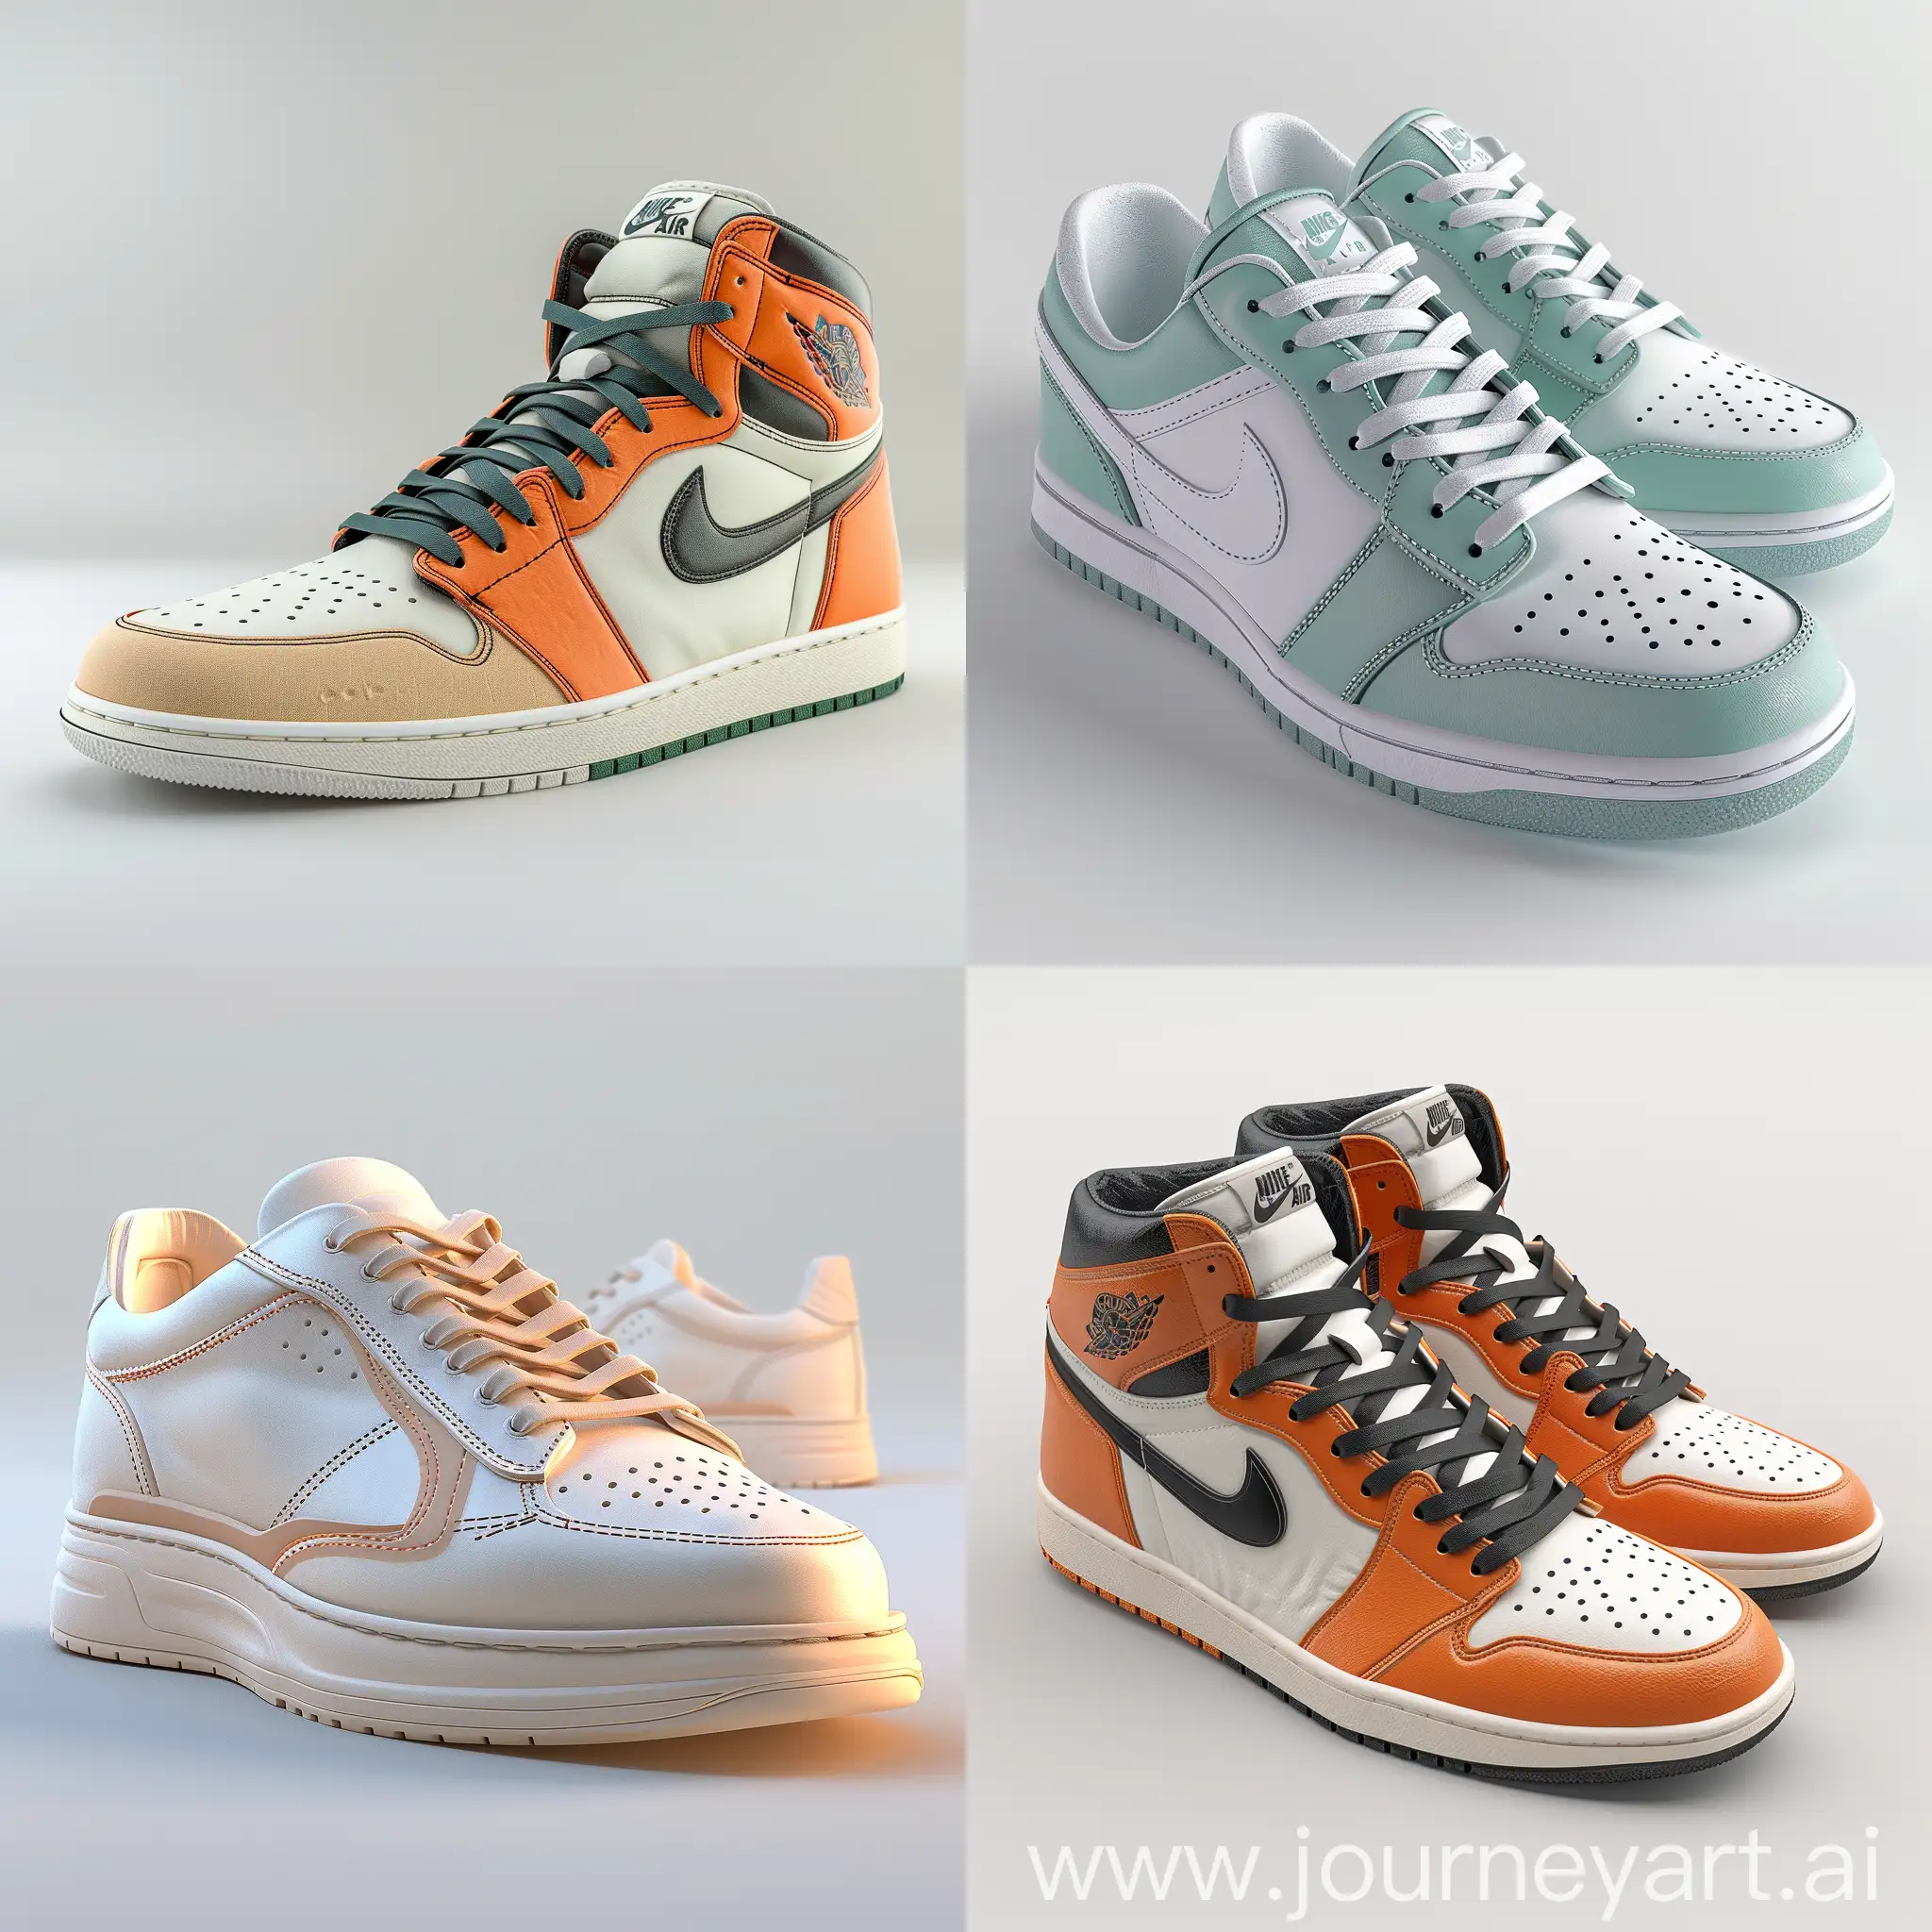 Vibrant-3D-Sneakers-by-Alberto-Seveso-High-Detail-Studio-Rendering